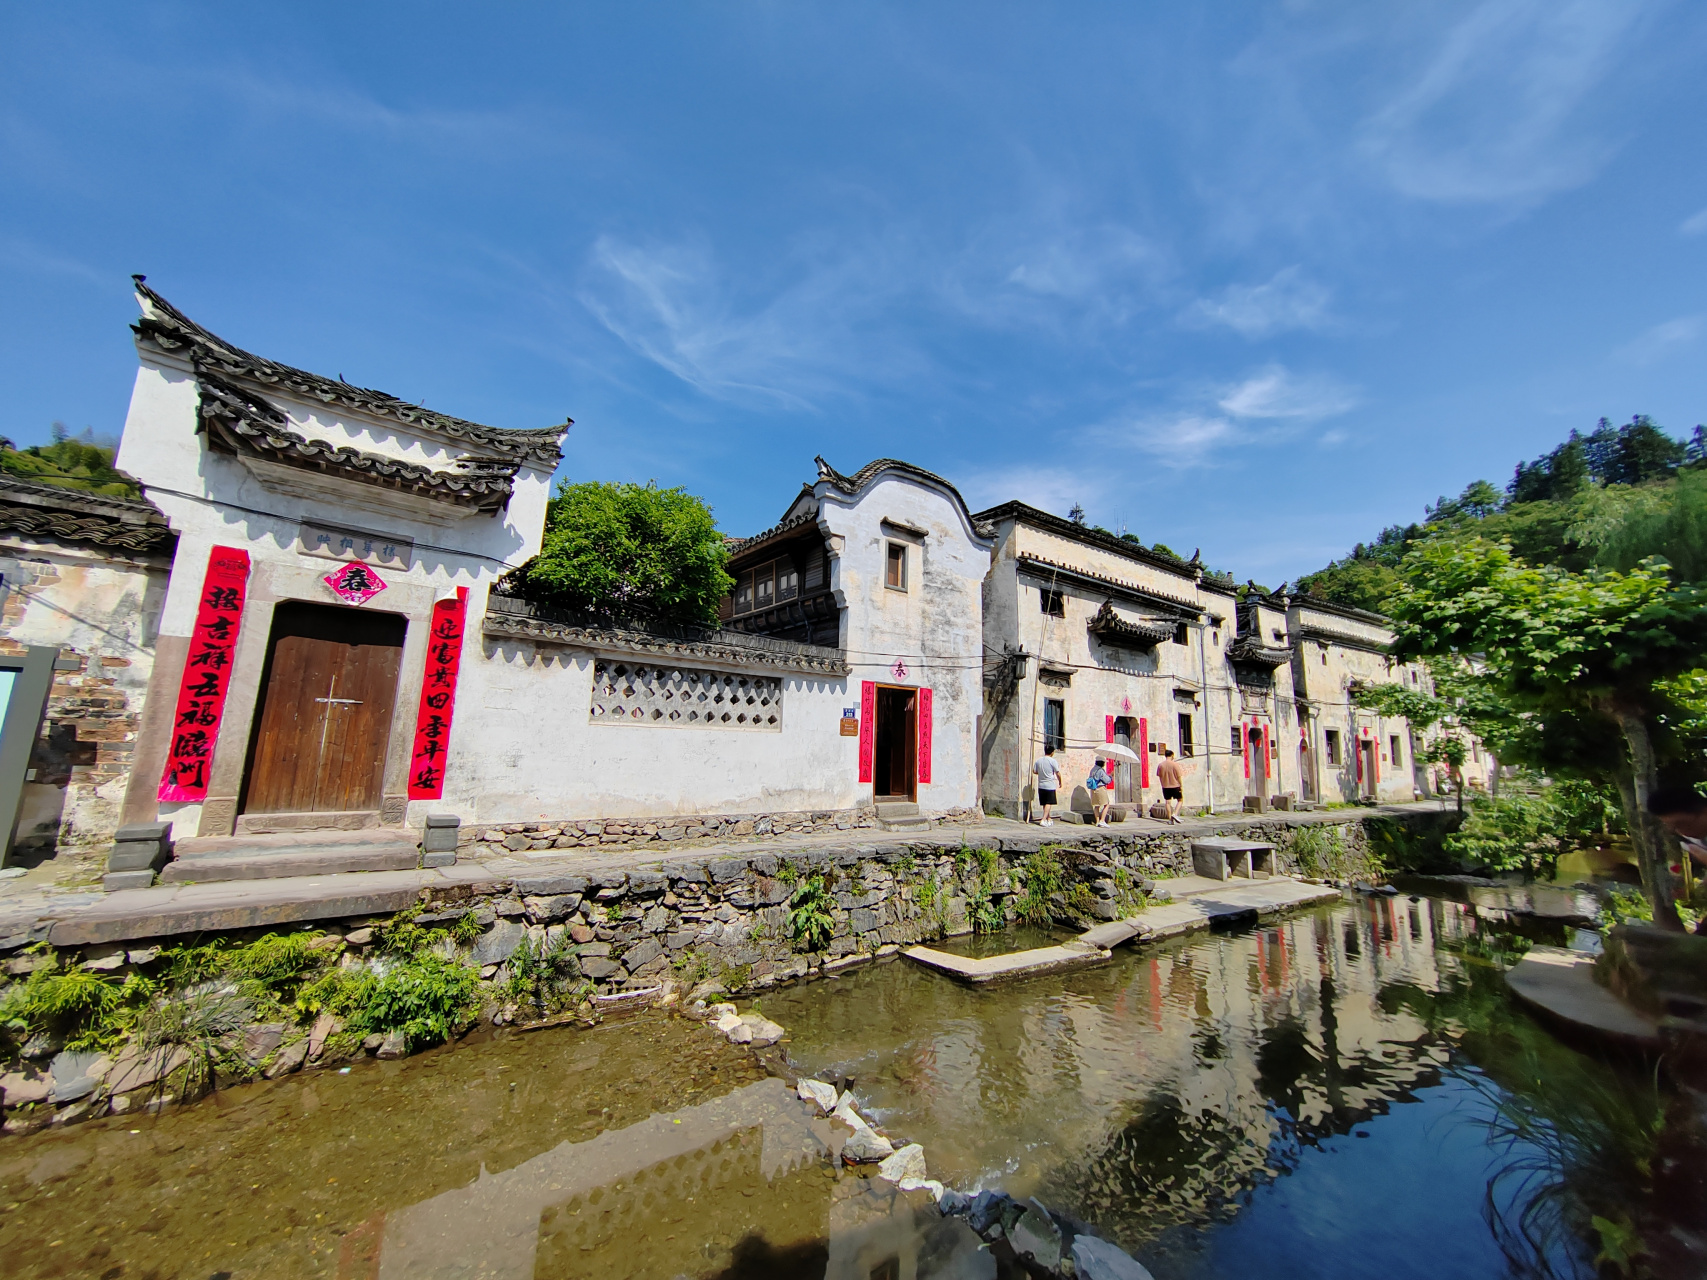 芹川古村,位于杭州淳安千岛湖环湖游半道上,一片还未开发的古村落